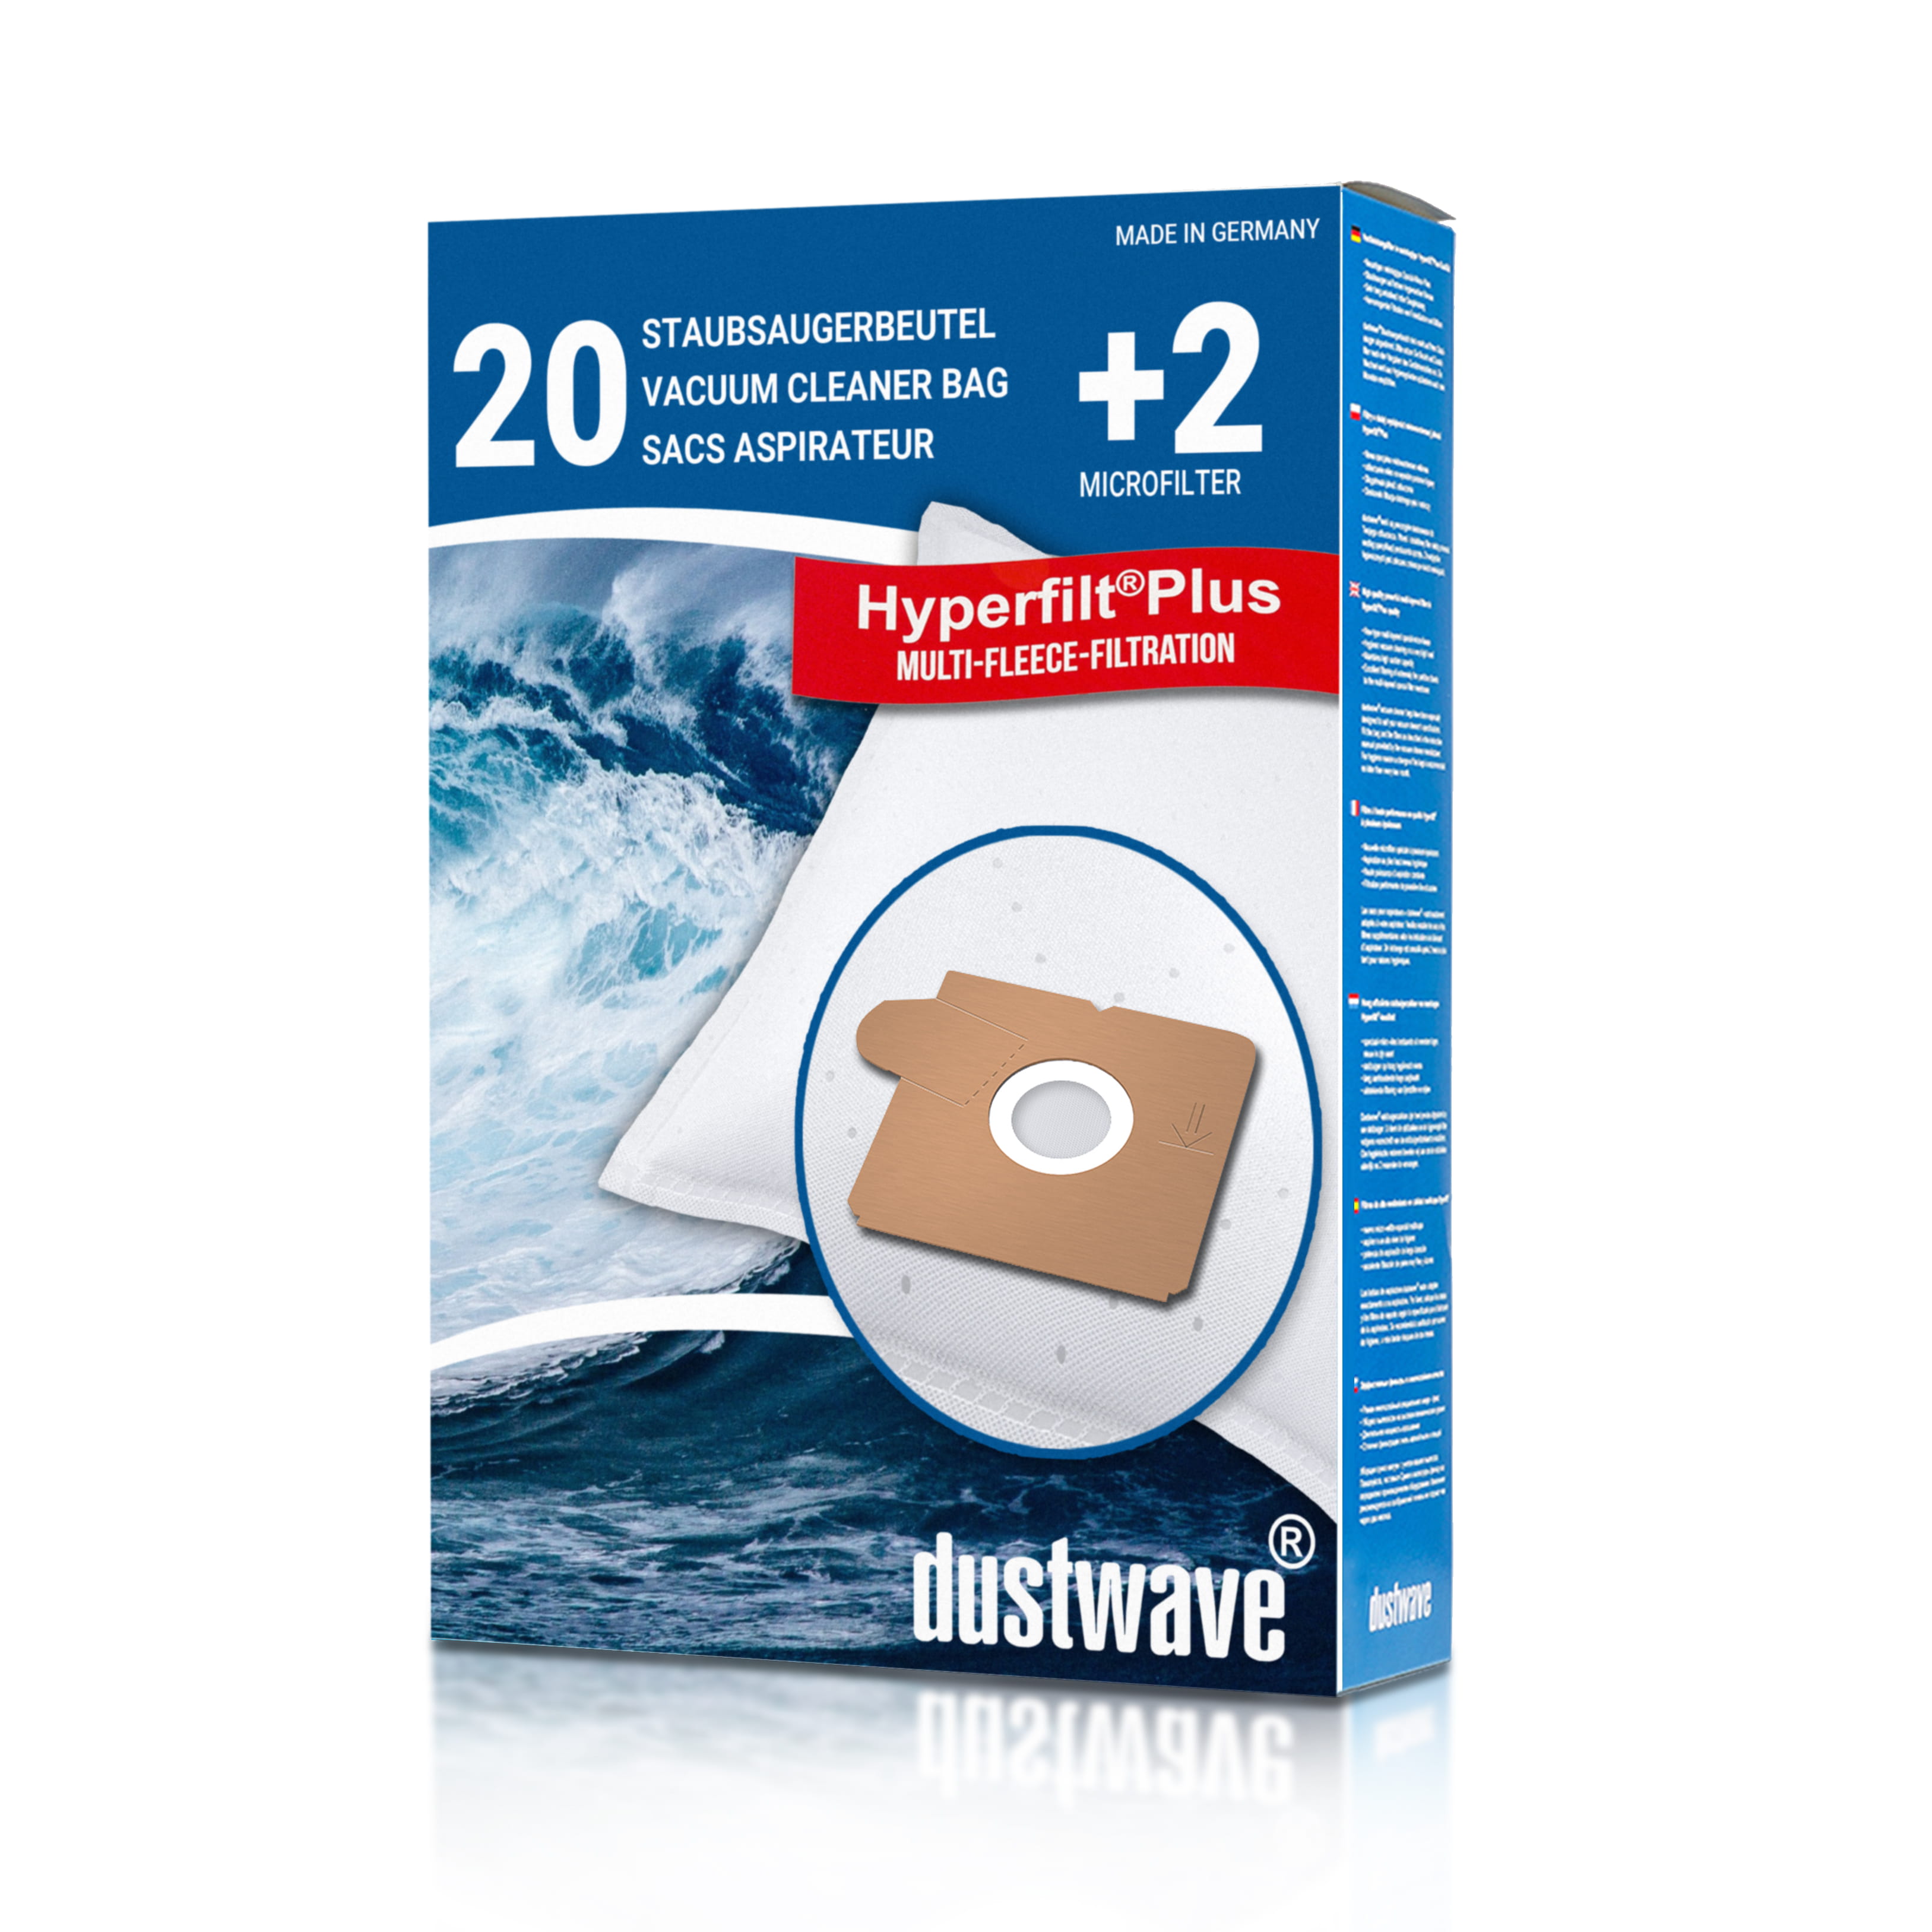 Dustwave® 20 Staubsaugerbeutel für AEG Vampyrino VS 030-1 - hocheffizient mit Hygieneverschluss - Made in Germany